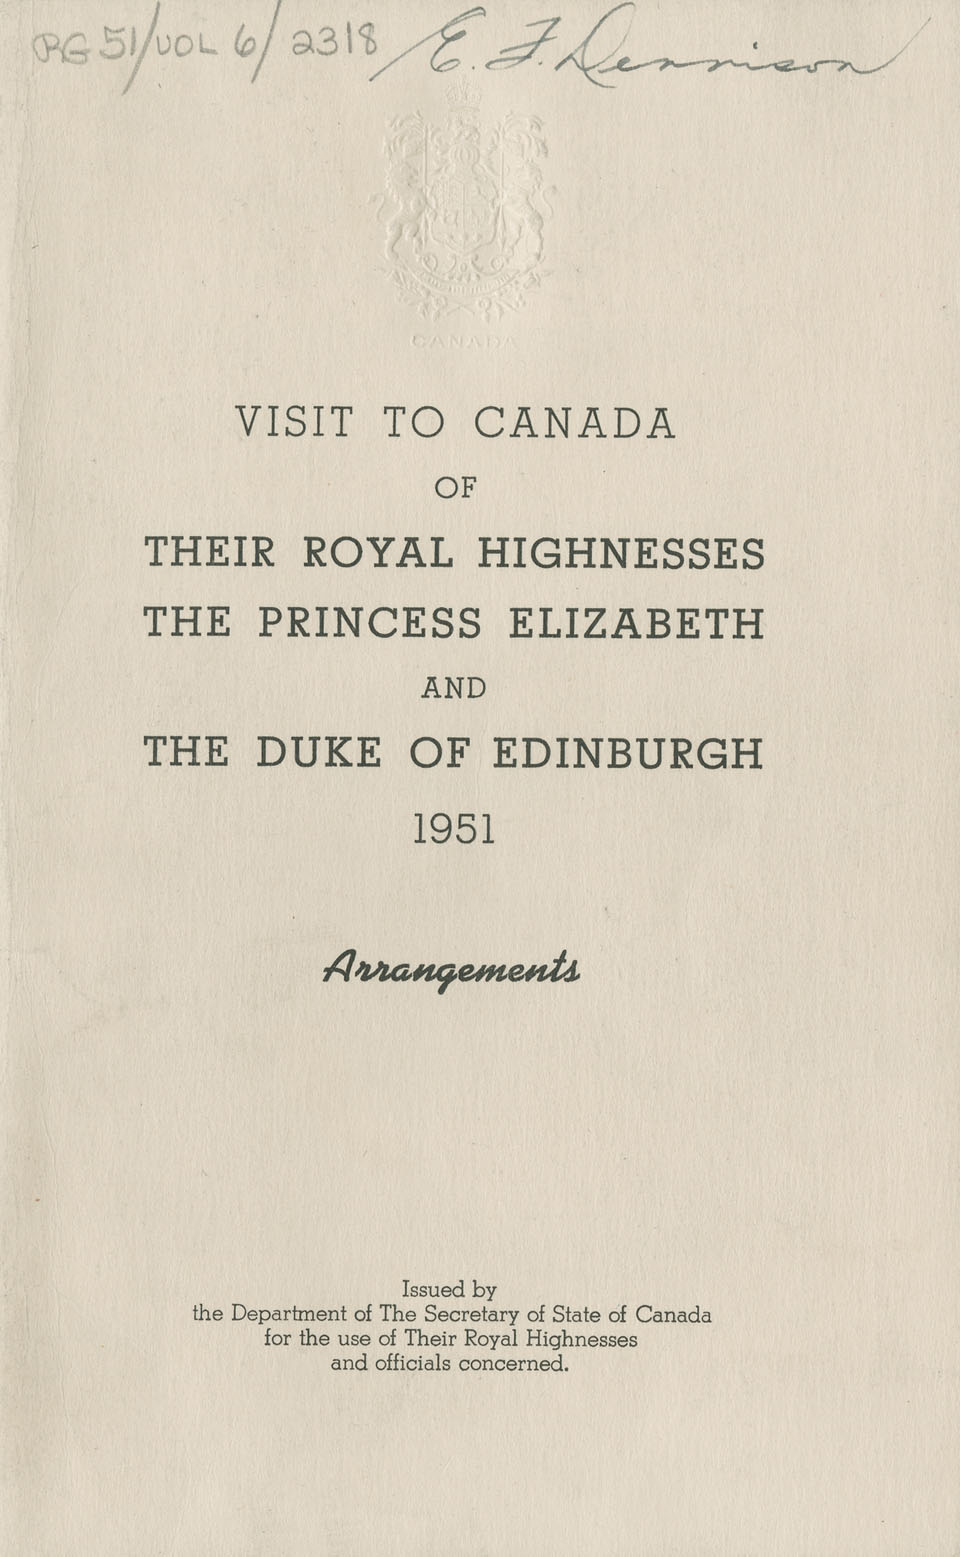 Royal Visit Arrangements